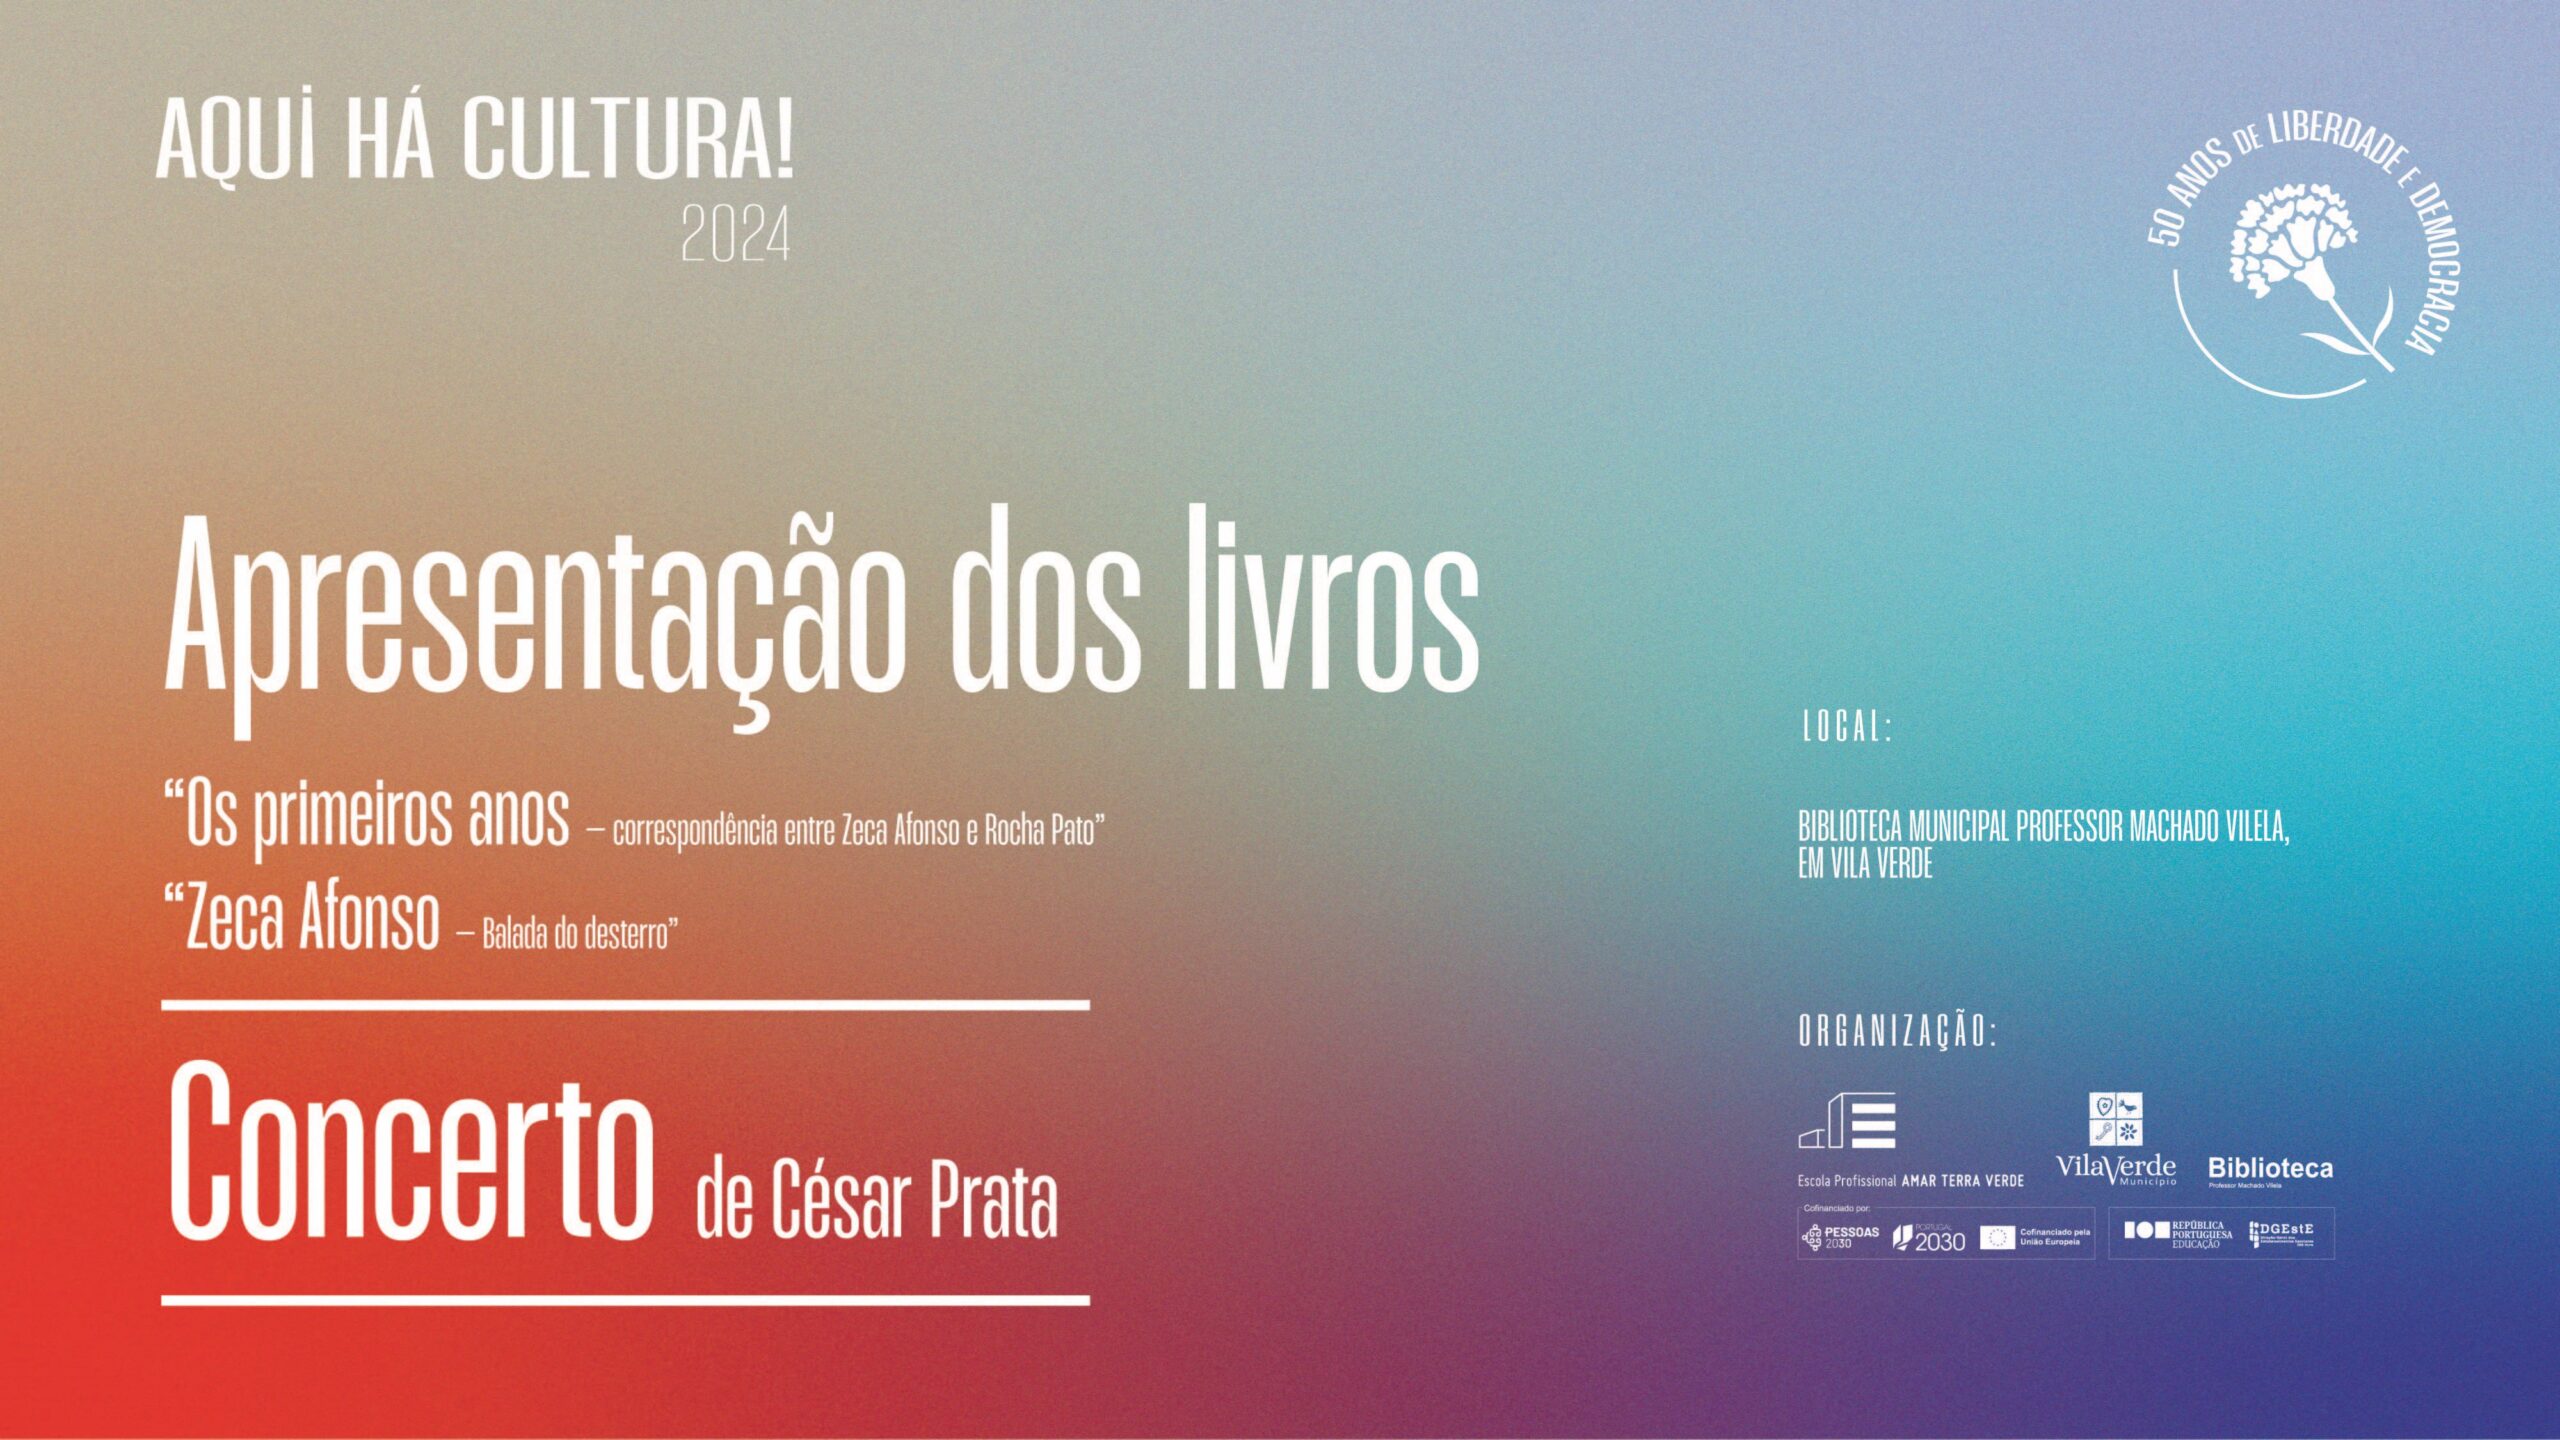 Capa do Evento Apresentação de obras sobre Zeca Afonso e concerto de César Prata